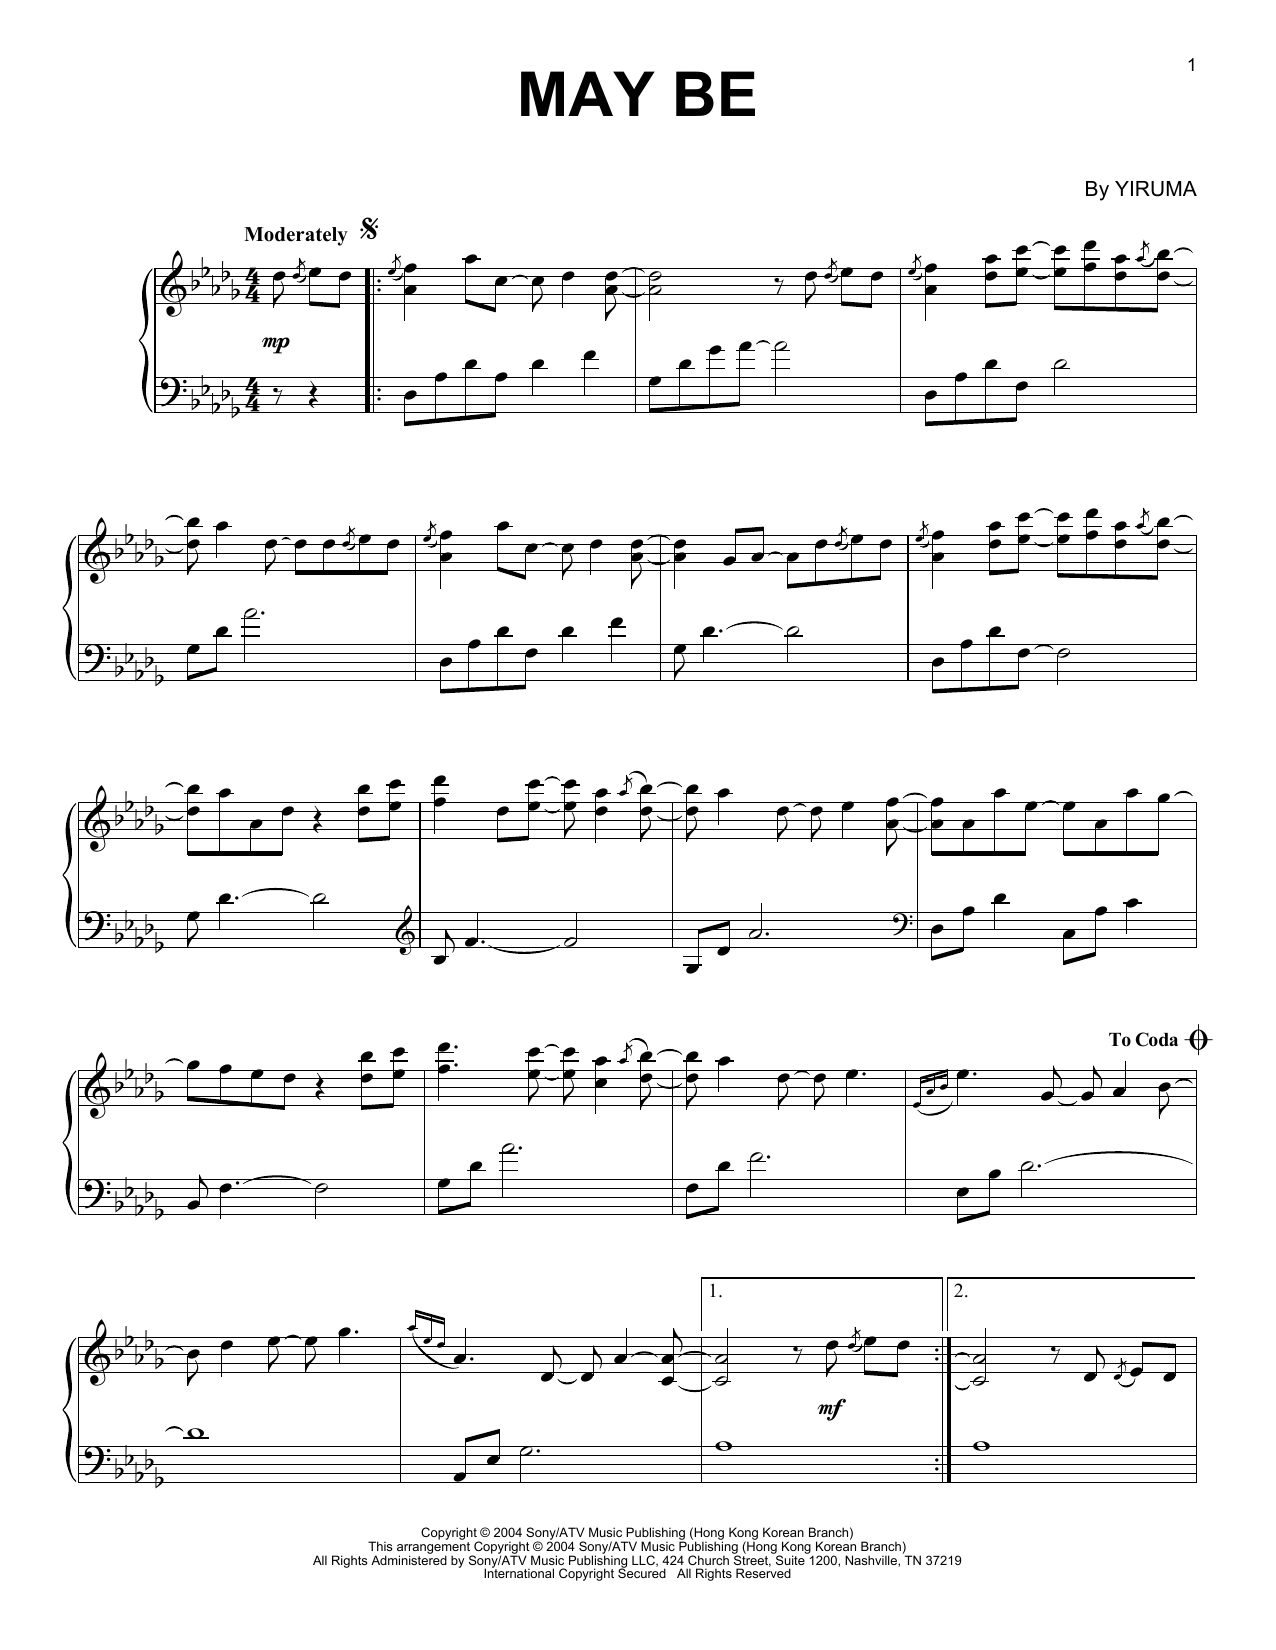 Yiruma May Be Sheet Music Notes & Chords for Piano - Download or Print PDF